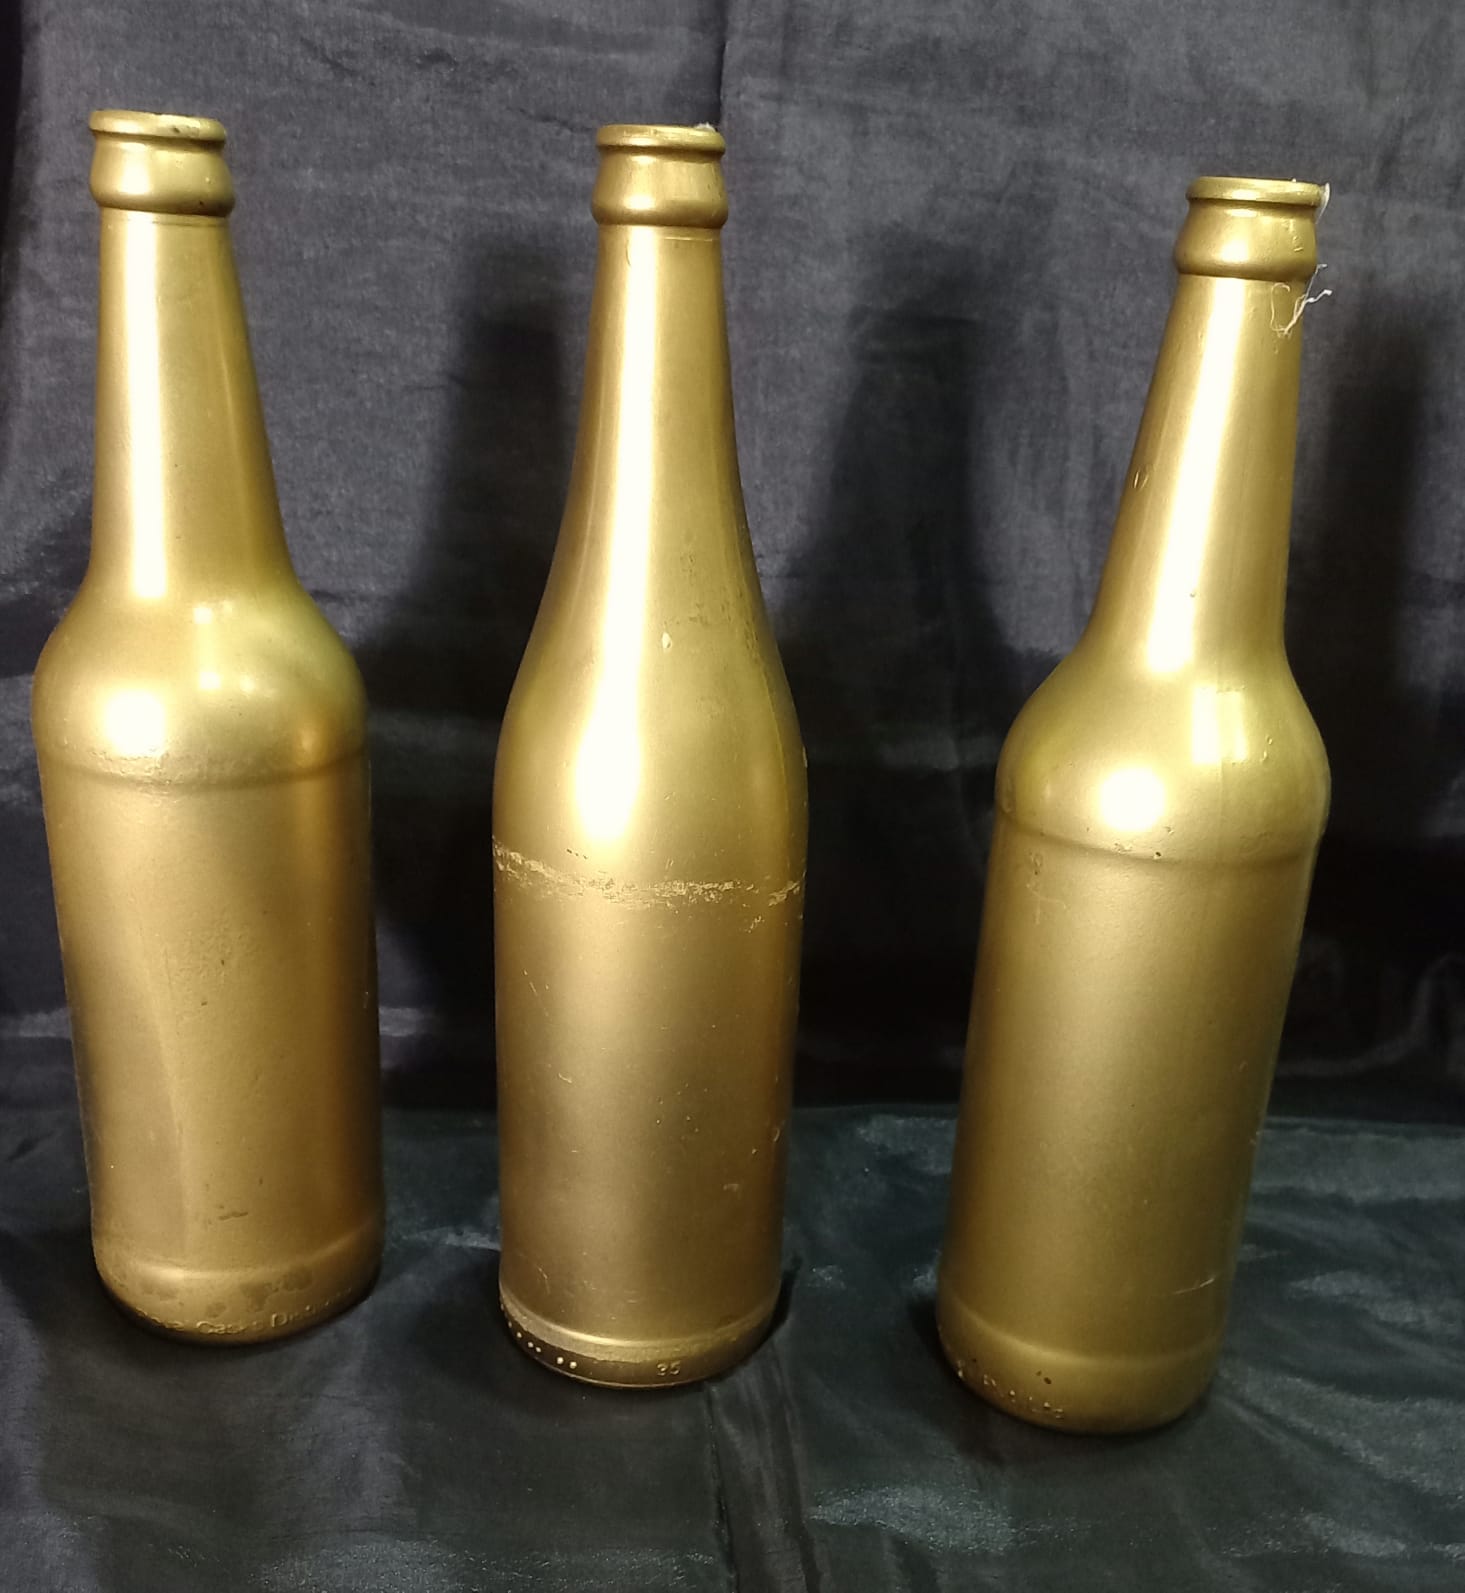 Plain Gold bottles